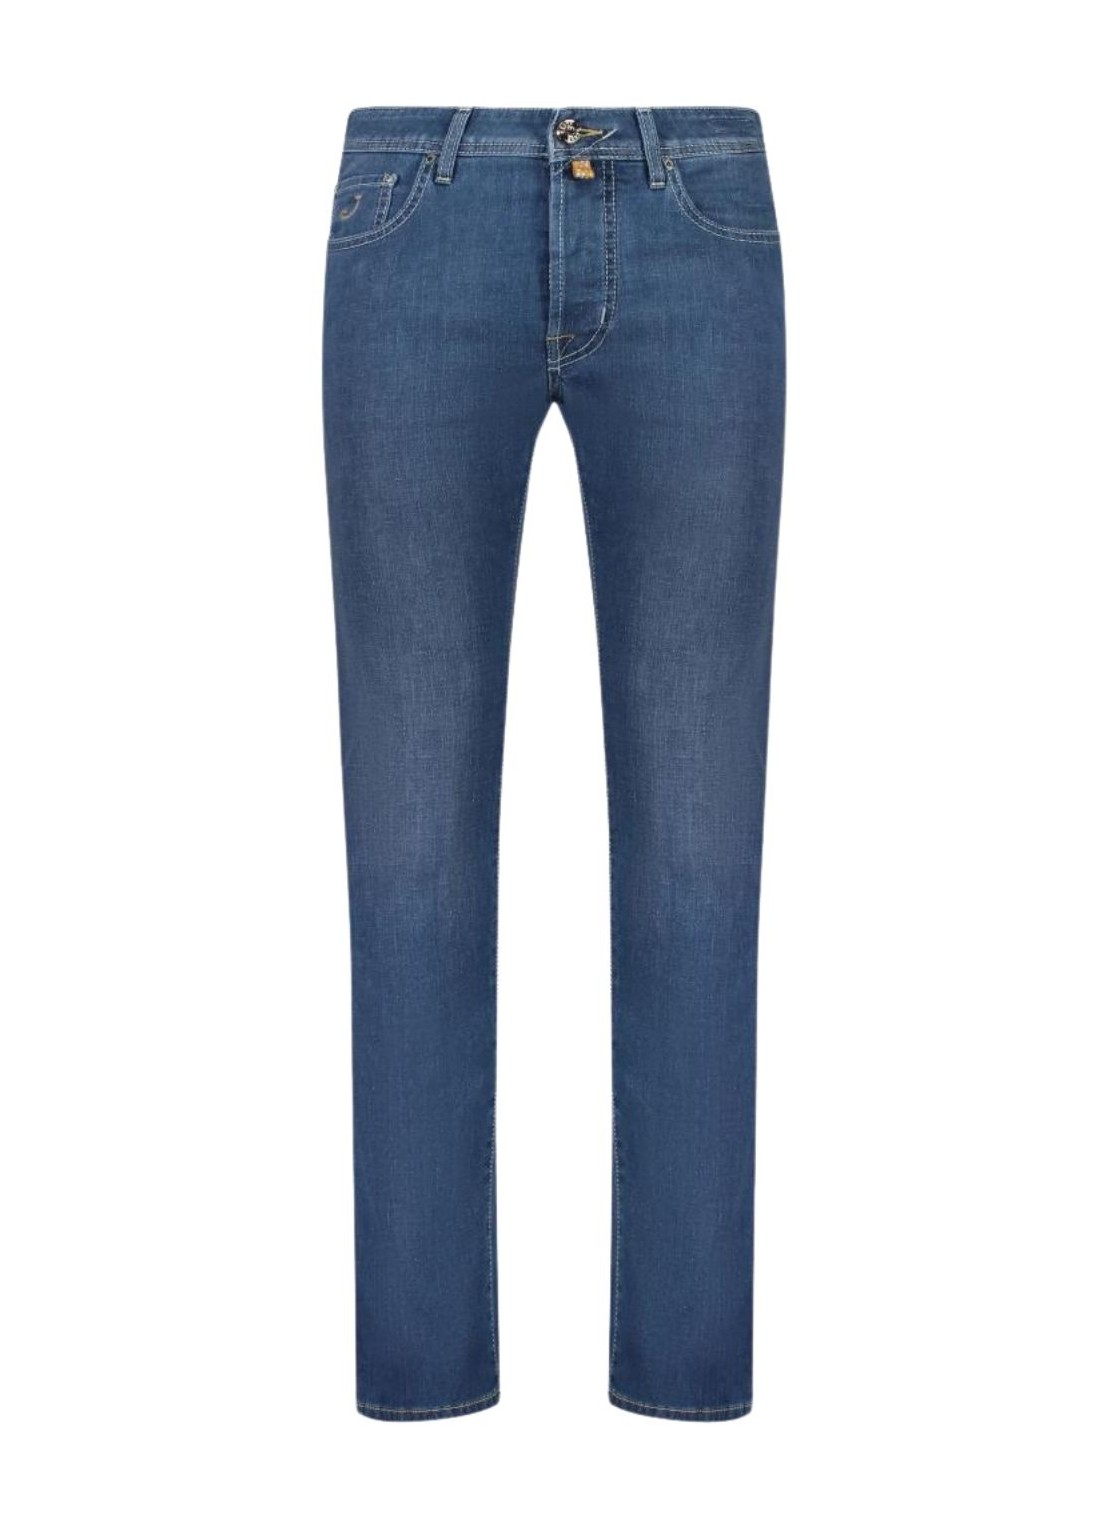 Pantalon jeans jacob cohen denim manpant 5 pkt slim fit bard - uqm0440s4130 676d talla 32
 